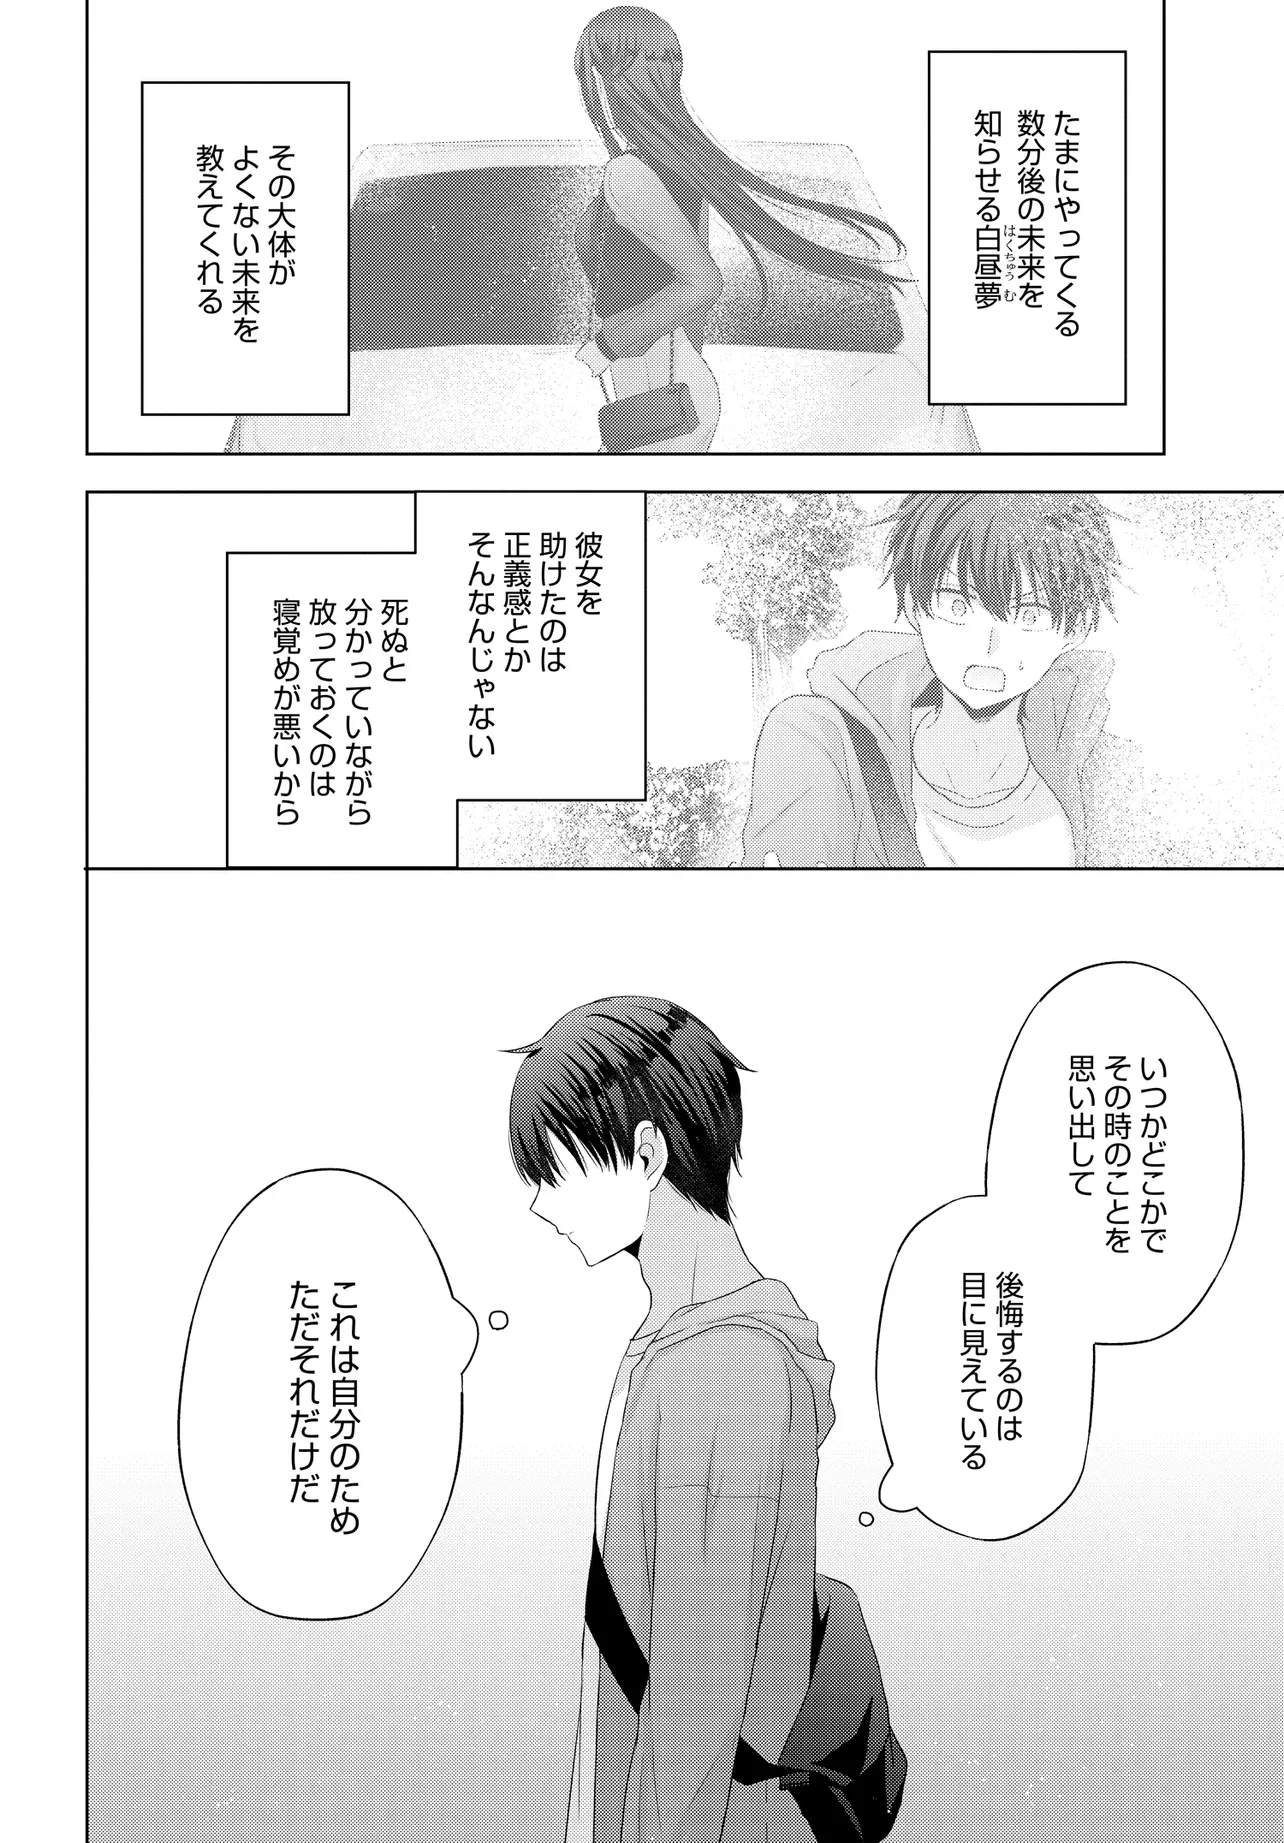 Suufun Go no Mirai ga Wakaru you ni Natta kedo, Onnagokoro wa Wakaranai. - Chapter 1 - Page 18